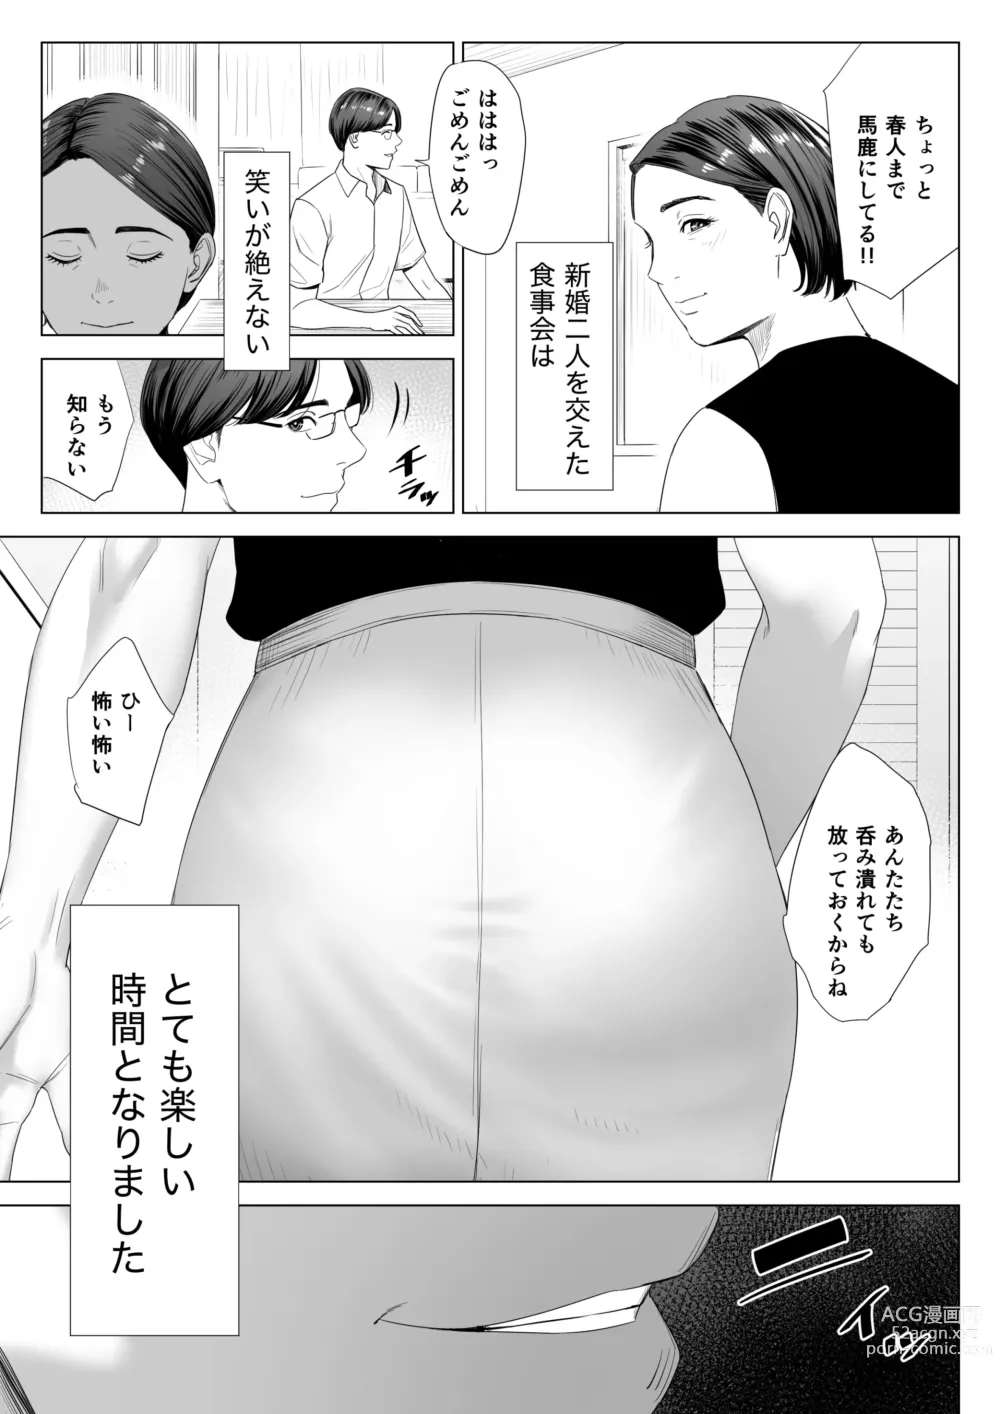 Page 8 of doujinshi Gibo no Tsukaeru Karada.